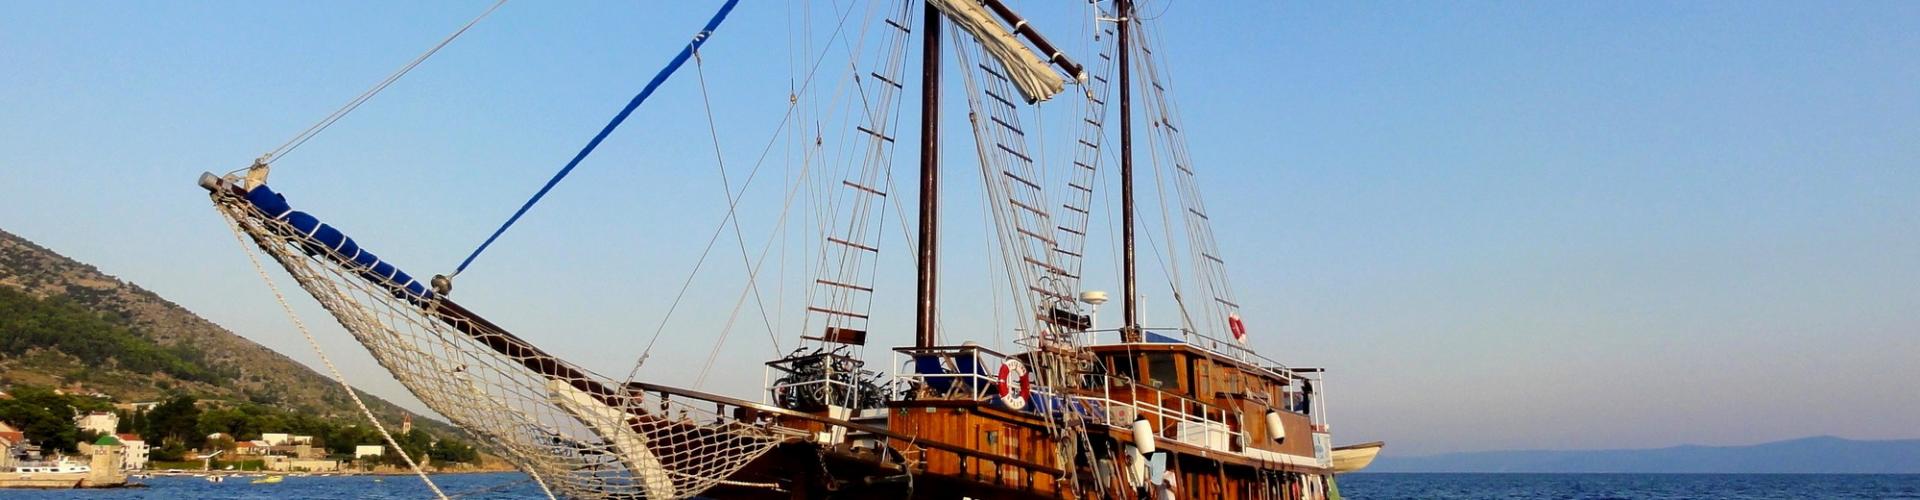 Traditional cruising ship Petrina- wooden motor sailer